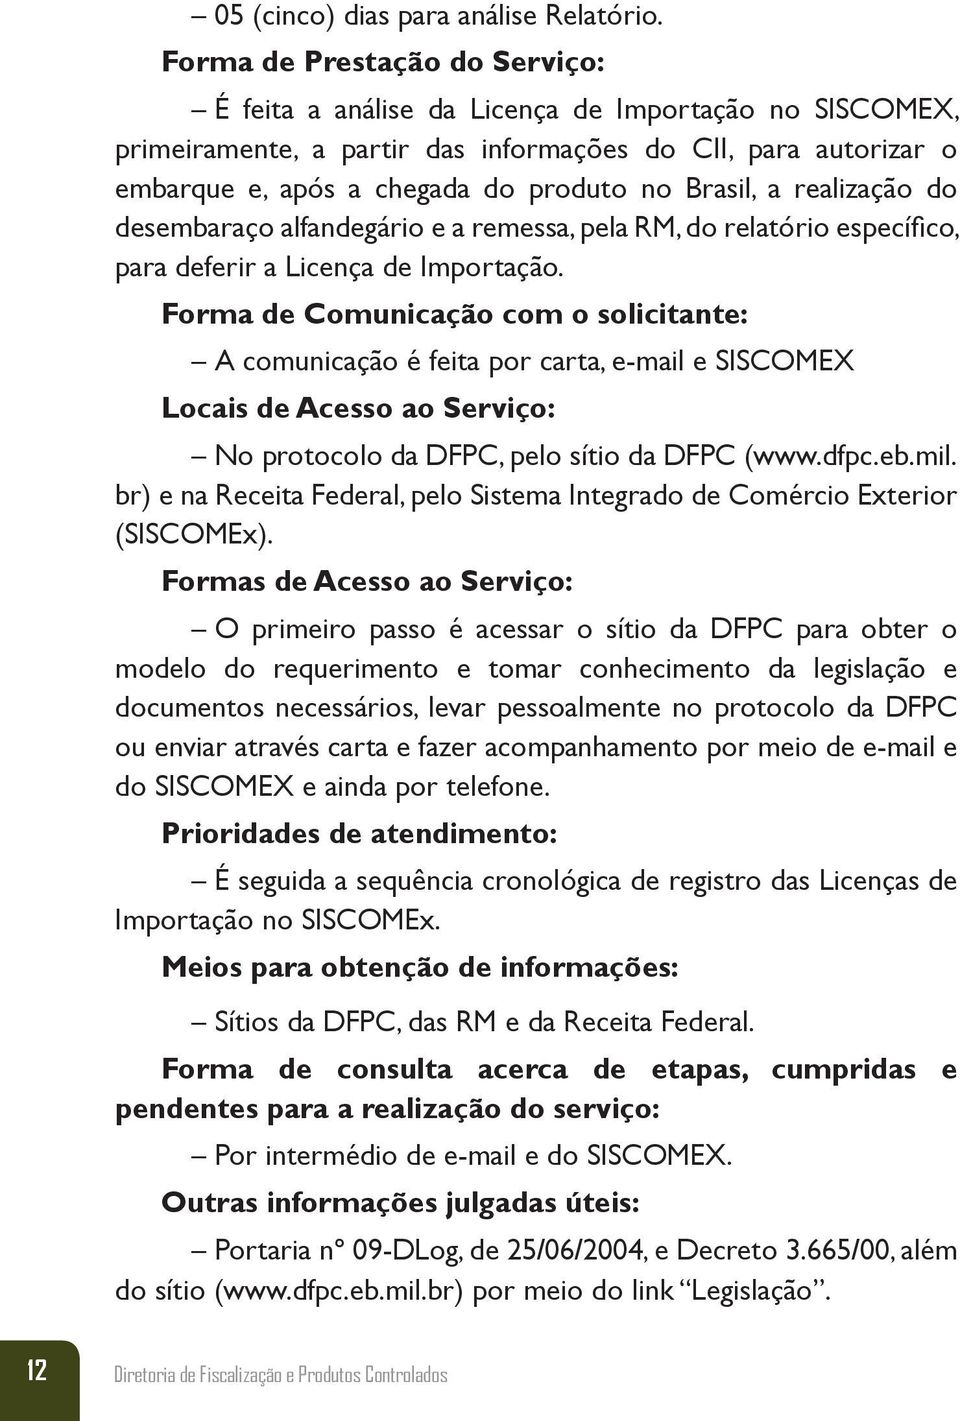 Brasil, a realização do desembaraço alfandegário e a remessa, pela RM, do relatório específico, para deferir a Licença de Importação.